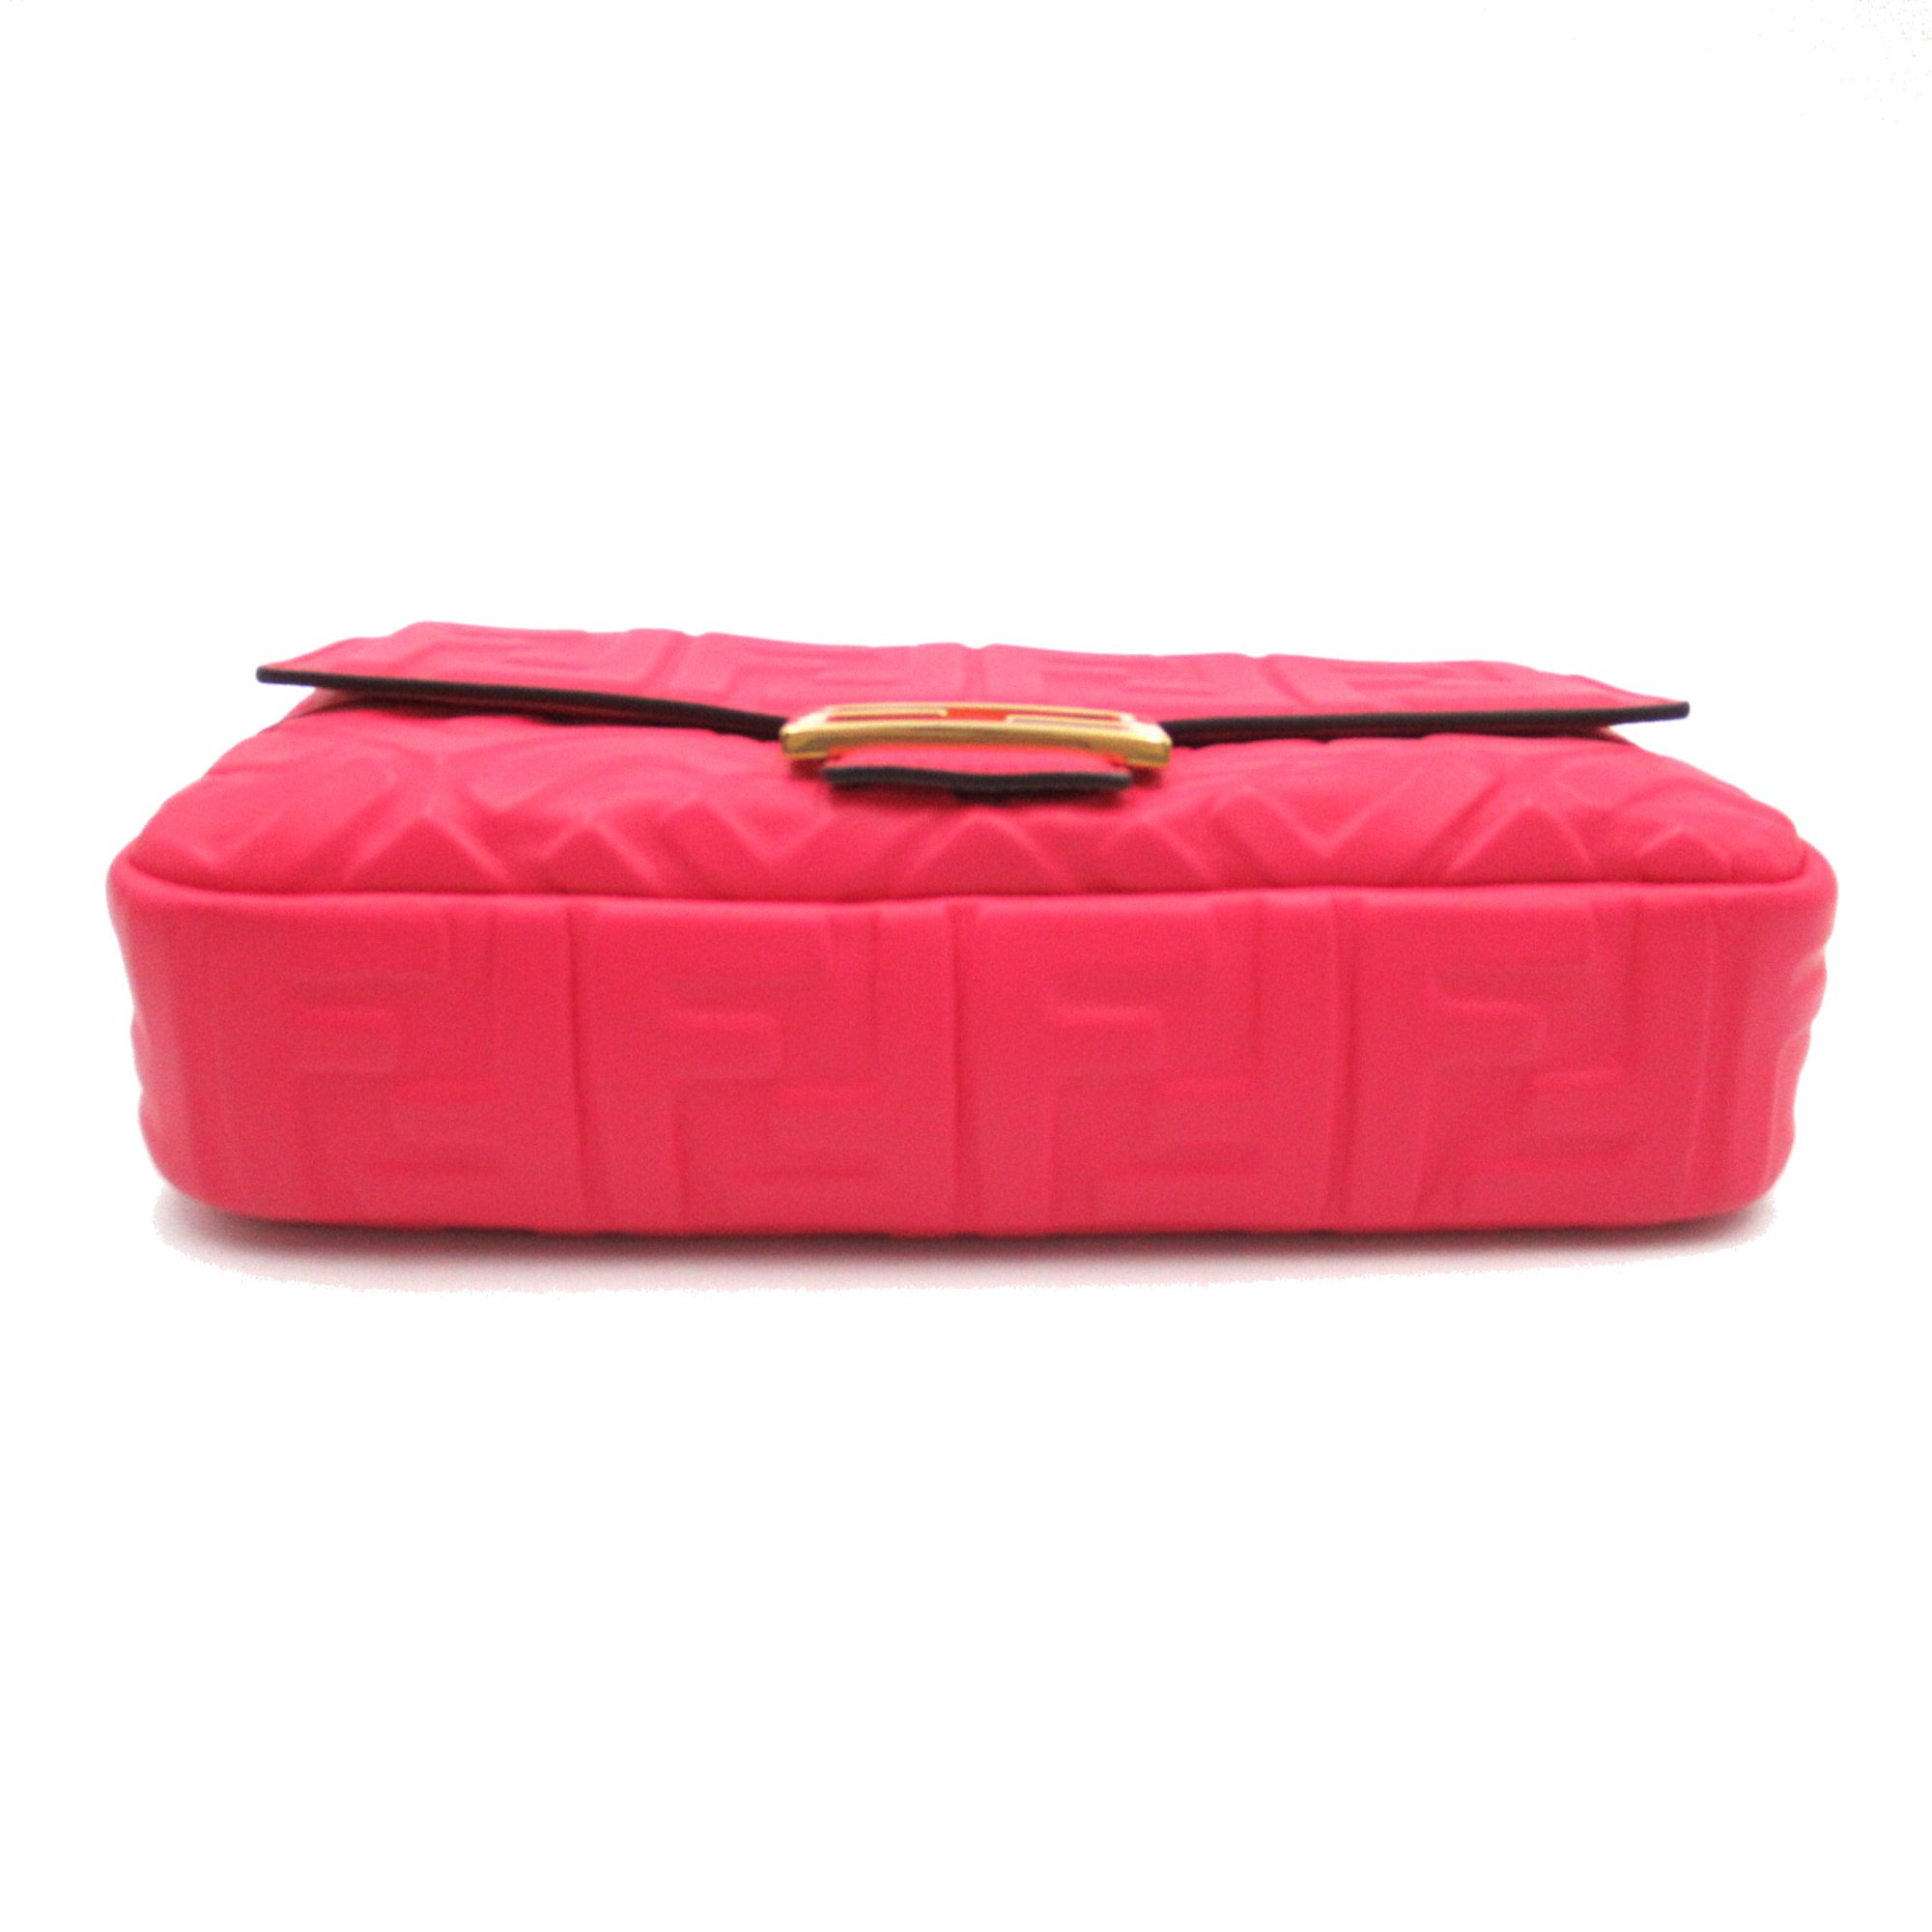 FENDI Baguette Nappa 2wayShoulder Bag Pink leather 8BR600A72VF1844